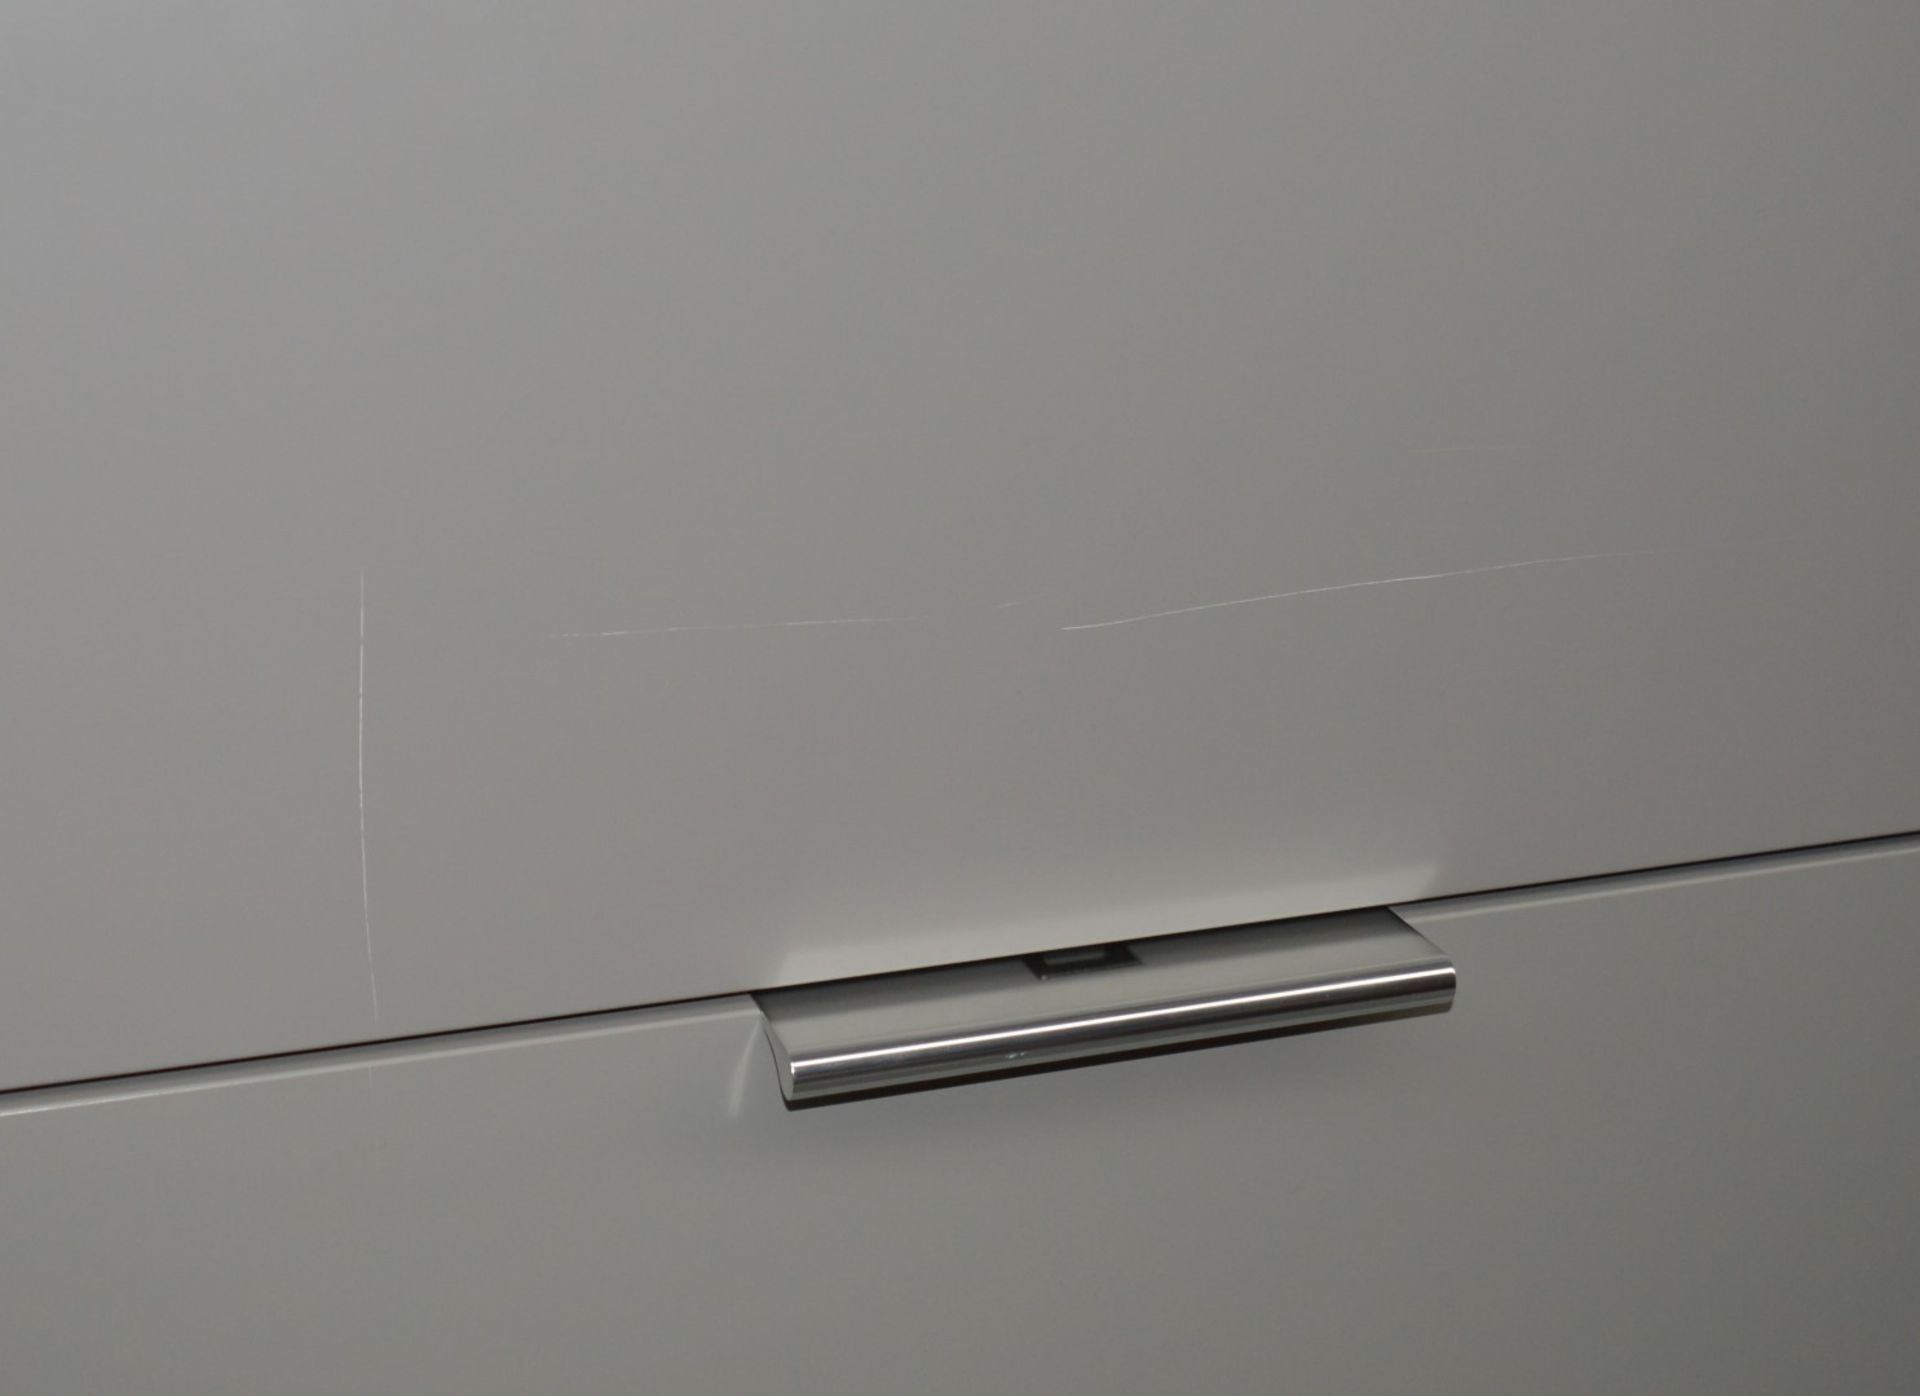 1 x Ligne Roset Compact Work Station Desk - Dimesions: H190 x D45 x W90cm - Secretaire Argile - Image 8 of 16